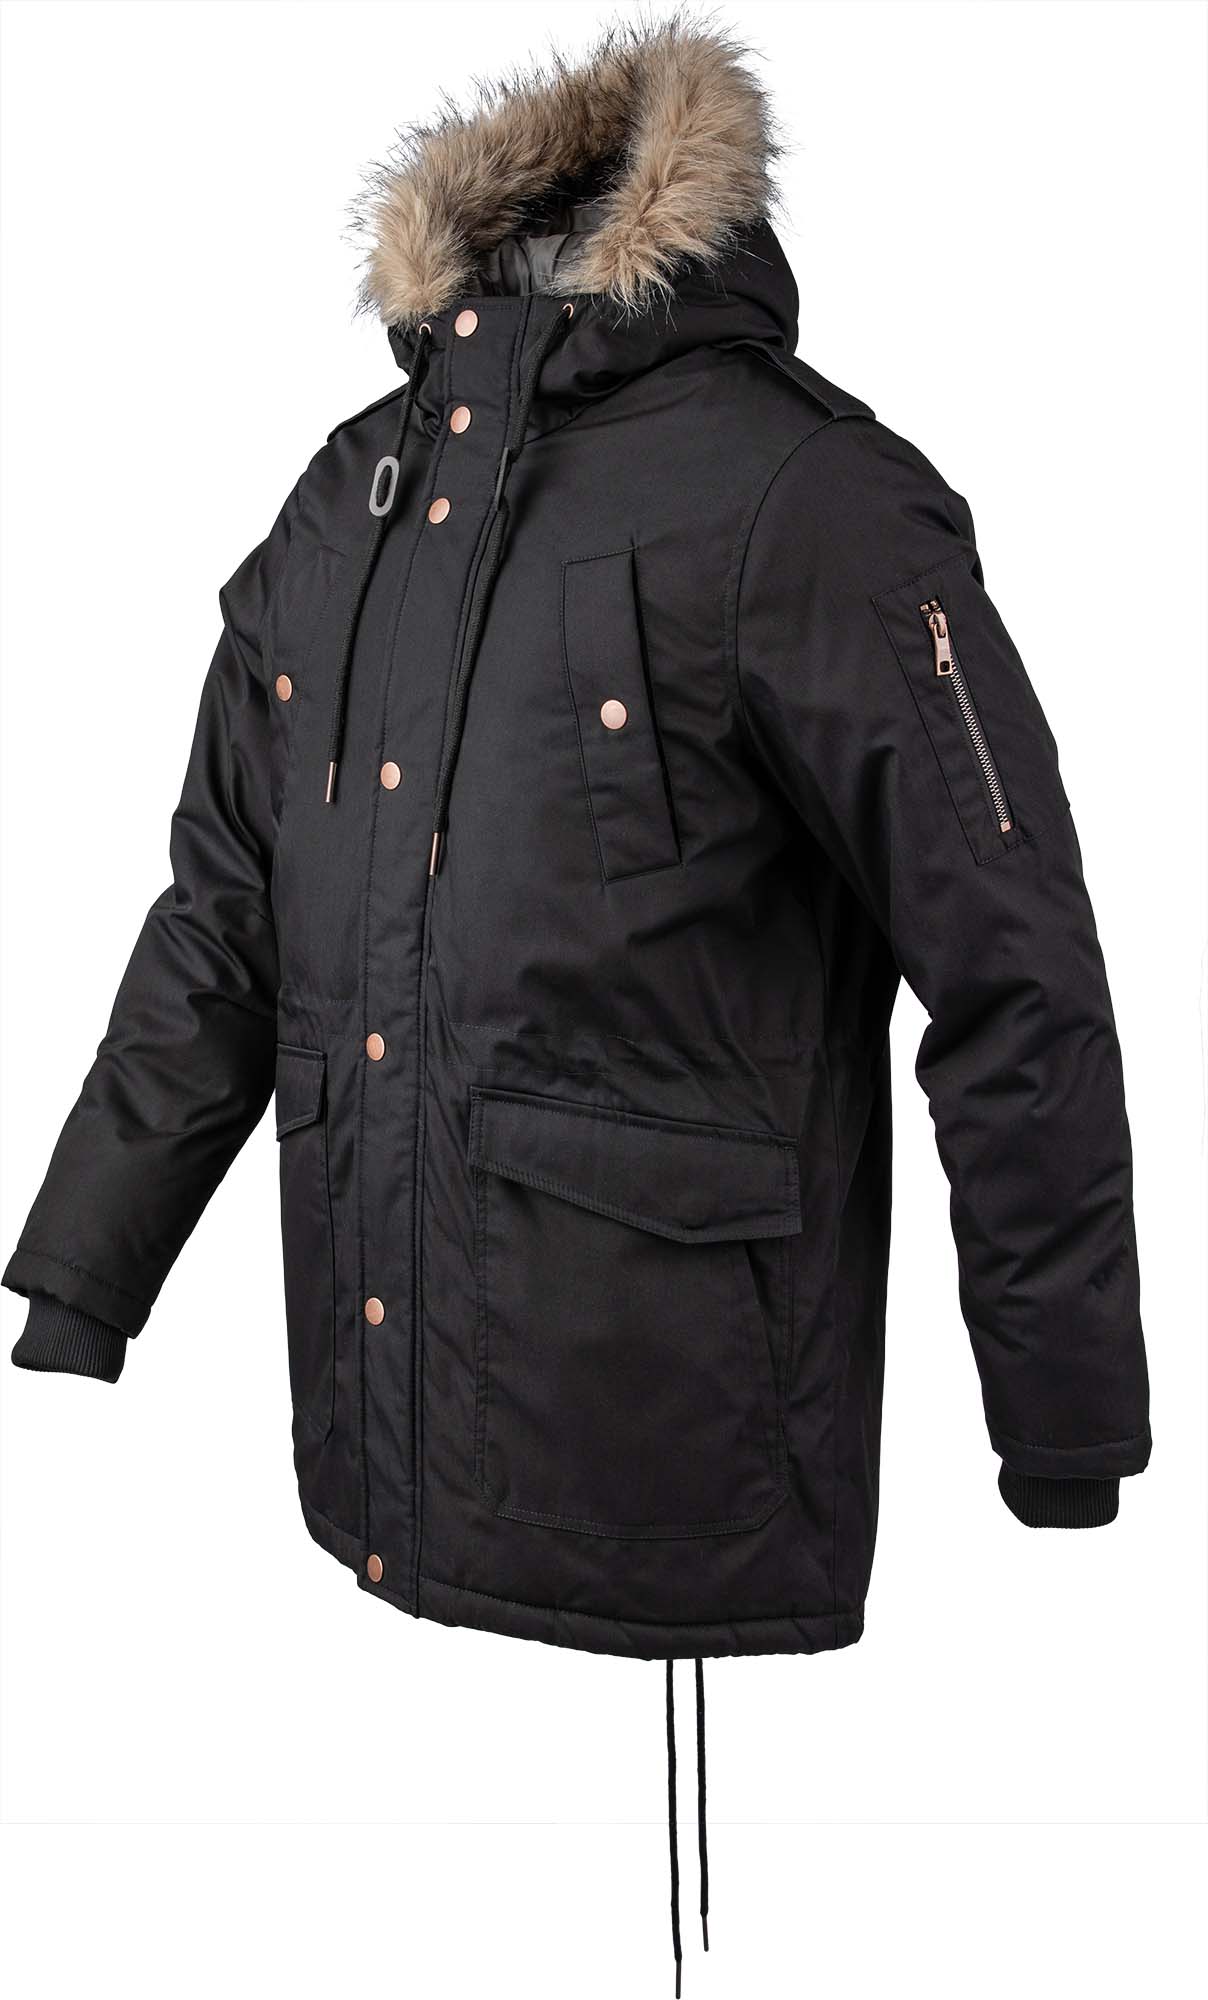 Men's jacket with warm padding